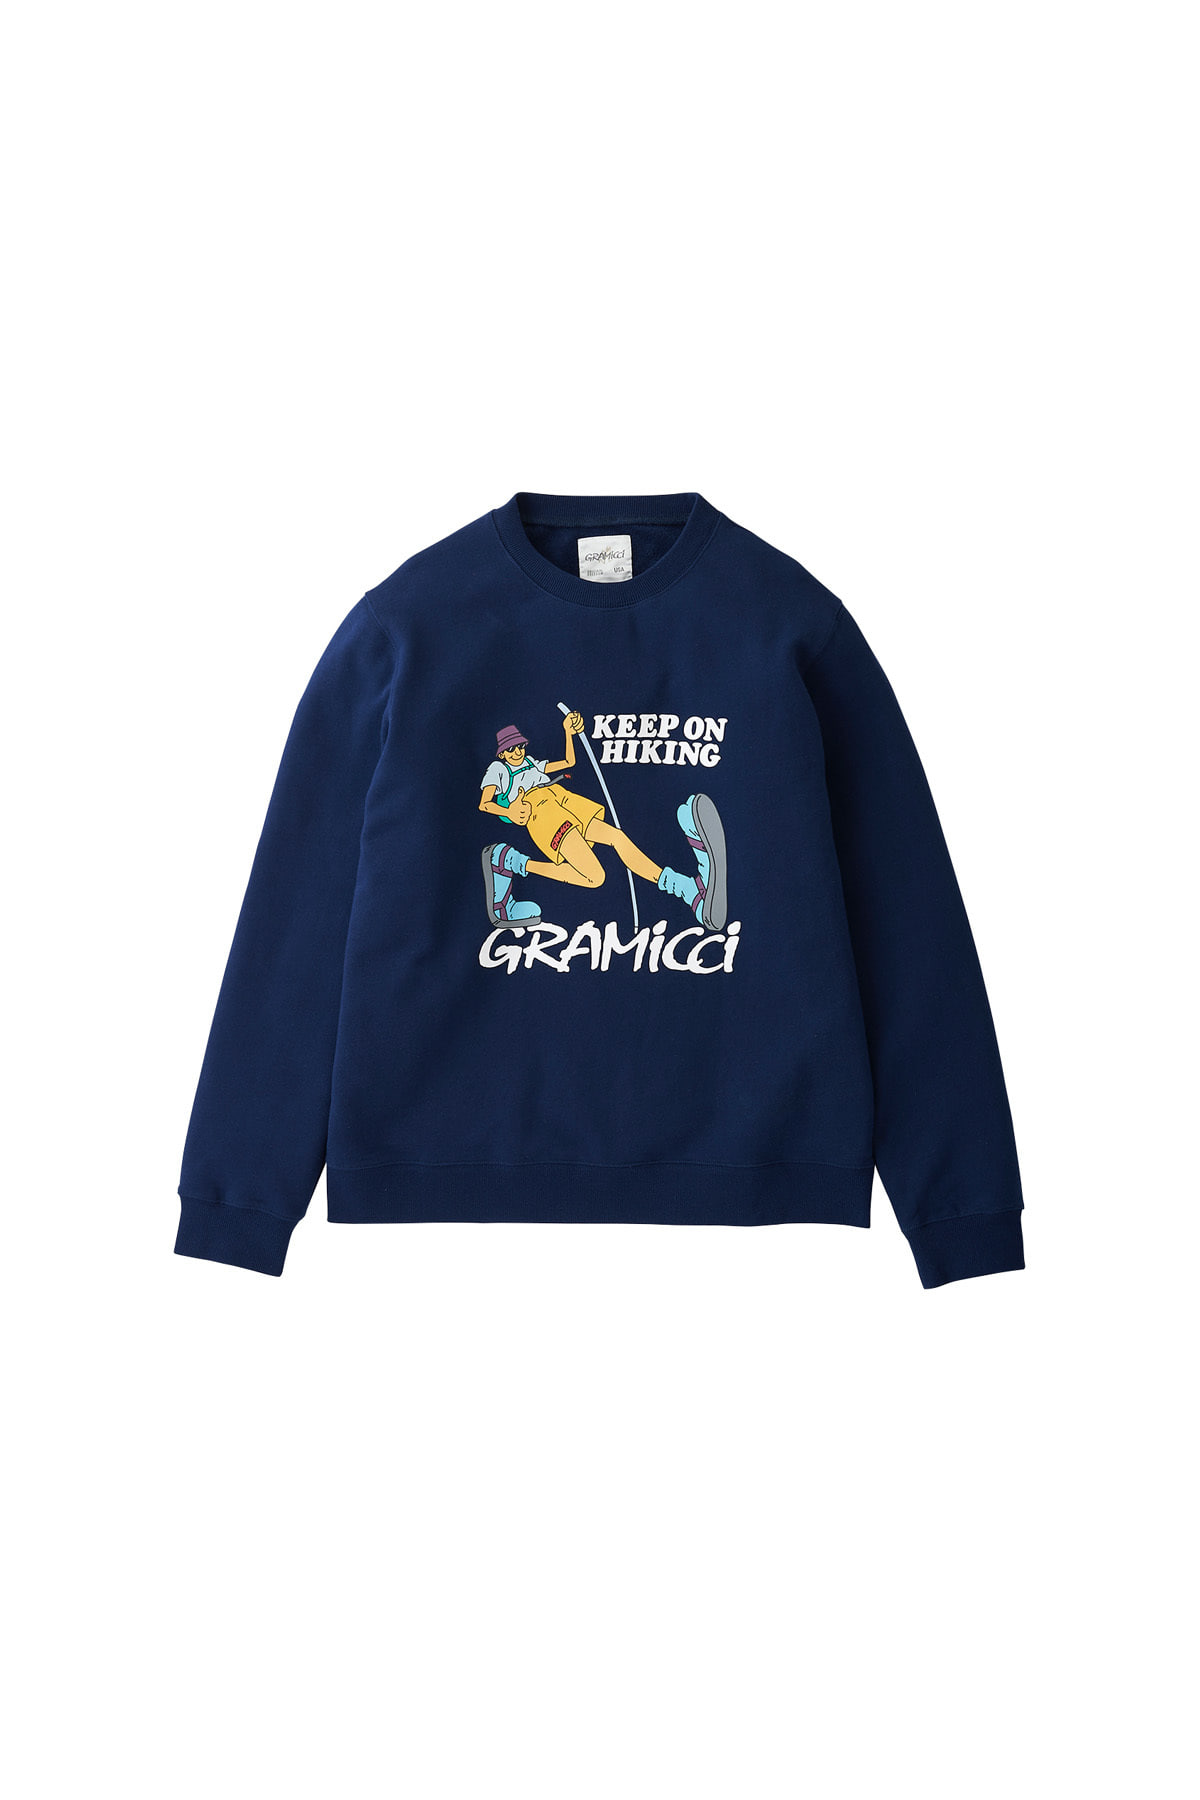 그라미치 킵 온 하이킹 스웨트셔츠 네이비